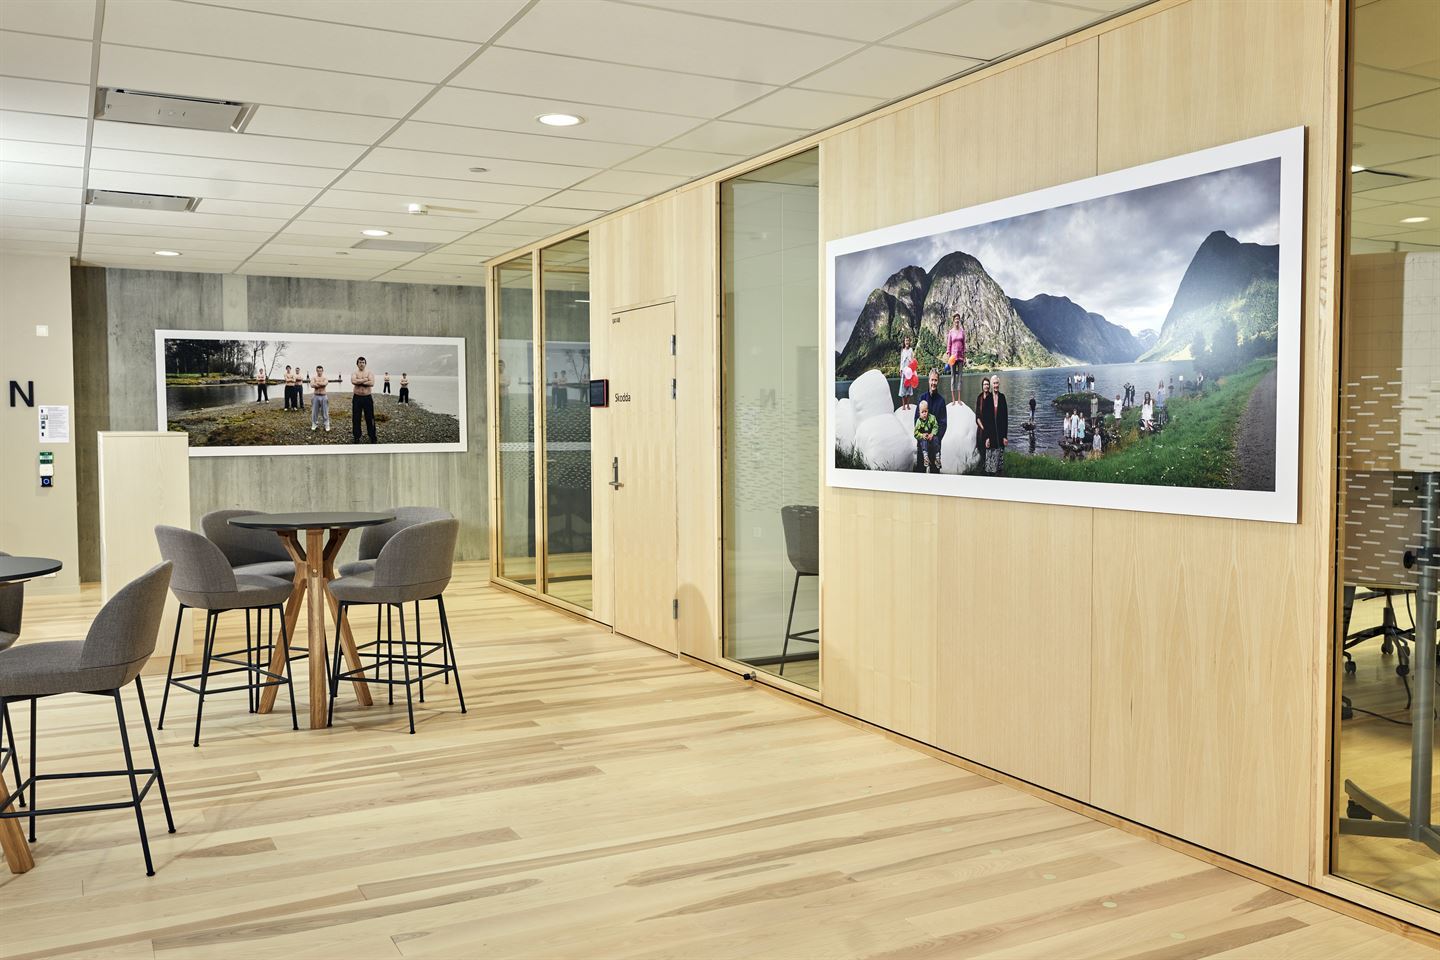 To fotografi på to ulike veggar i kontorlandskap med møterom. Motiva er menn i bar overkropp og menneske og rundballar langs eit vatn.